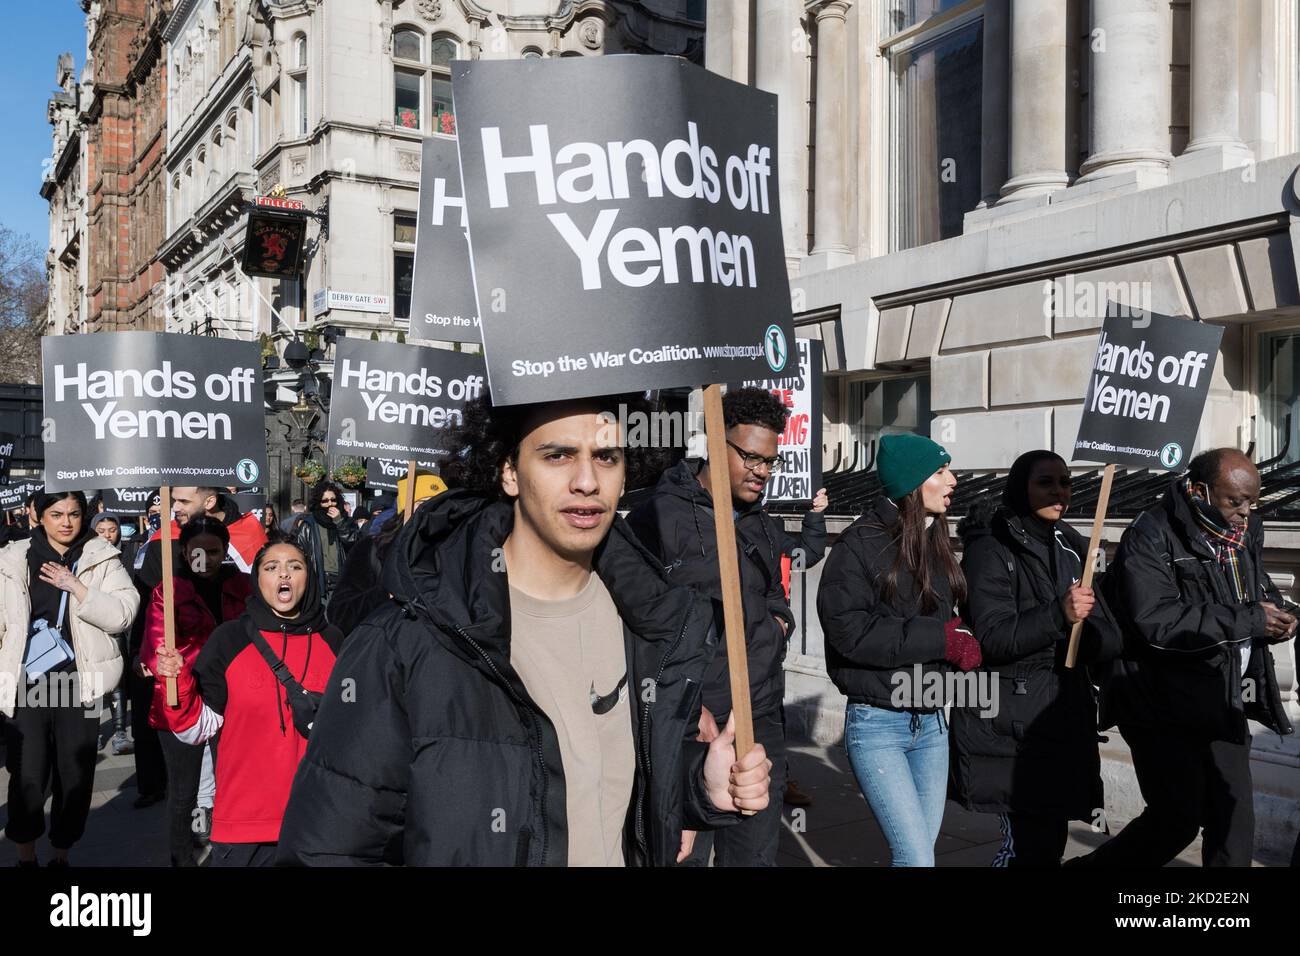 LONDRES, REINO UNIDO - 12 DE FEBRERO de 2022: Manifestantes contra la guerra participan en una marcha de protesta en el centro de Londres contra la guerra y la crisis humanitaria en curso en Yemen el 12 de febrero de 2022 en Londres, Inglaterra. Los manifestantes piden al gobierno del Reino Unido que ponga fin a la venta de armas a Arabia Saudita, que ha estado liderando la coalición contra los hutíes respaldados por Irán en Yemen durante los últimos siete años. (Foto de Wiktor Szymanowicz/NurPhoto) Foto de stock